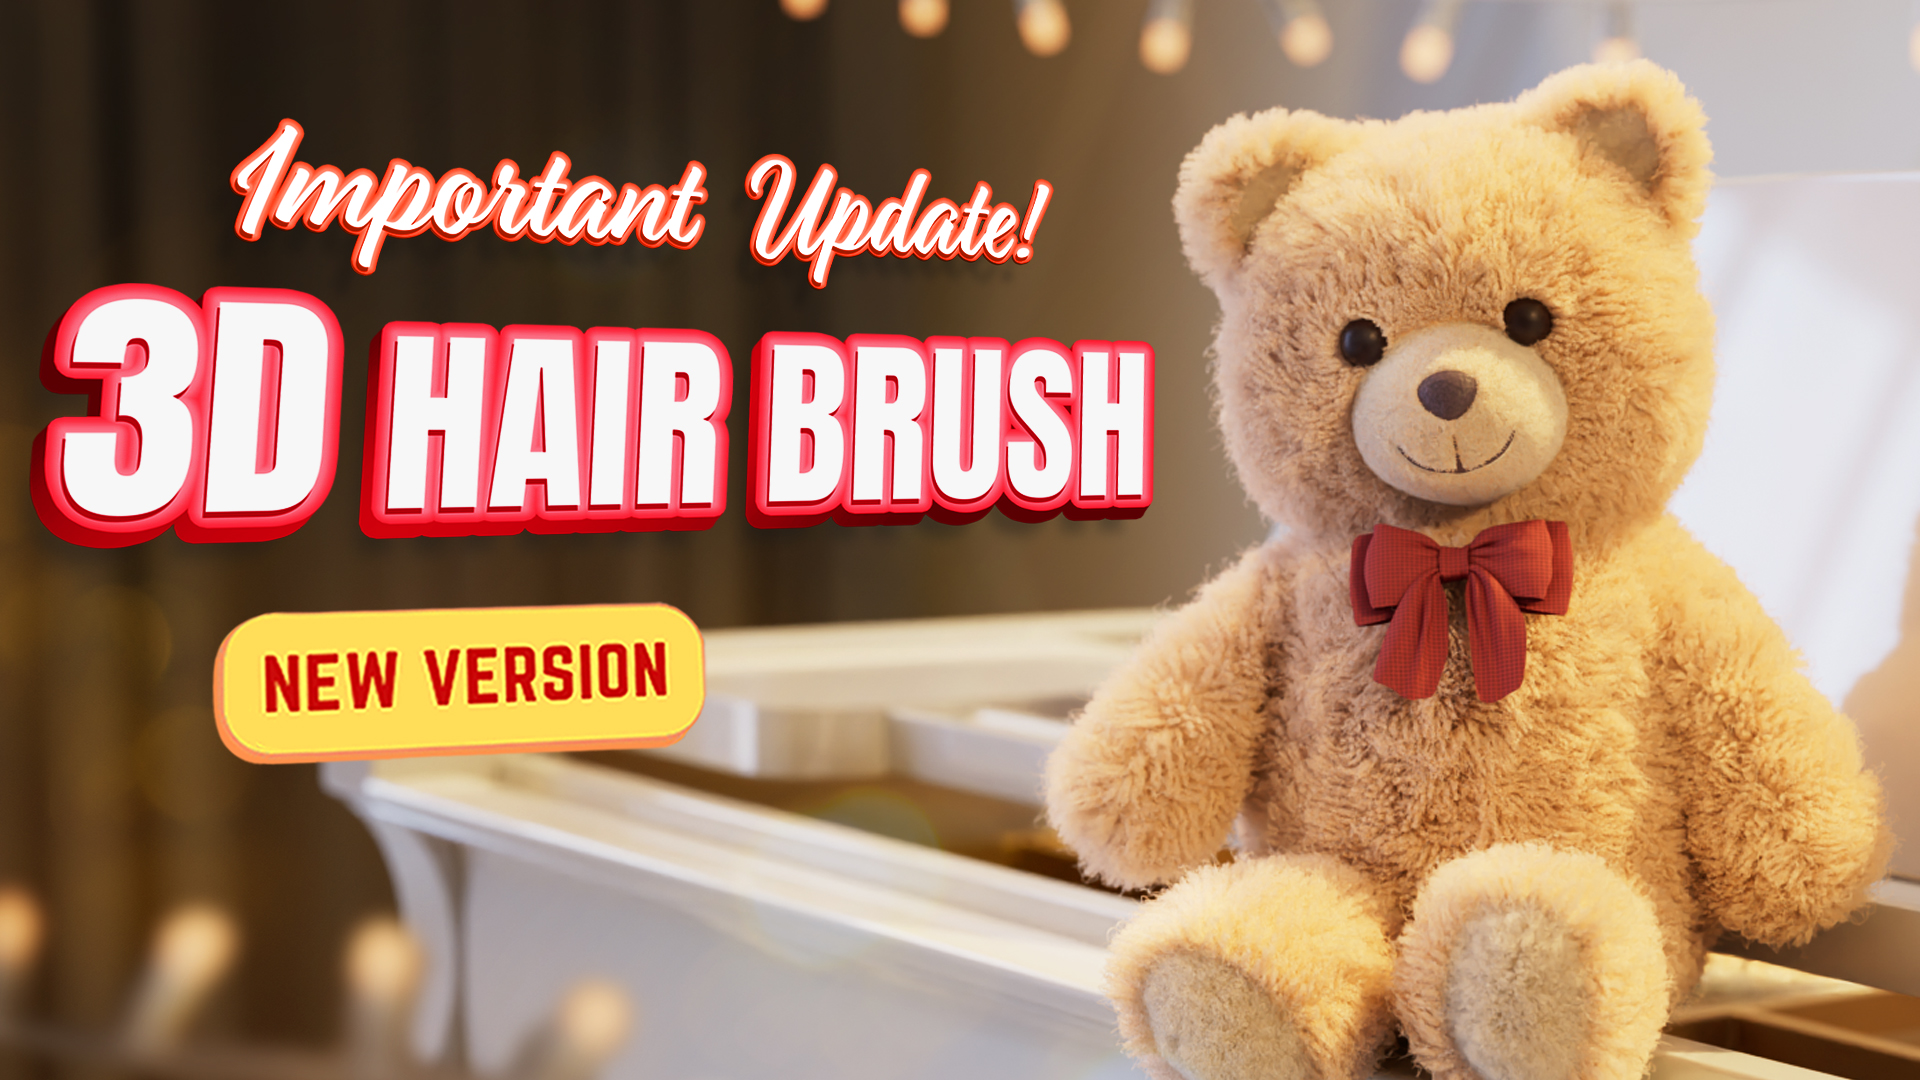 3D Hair Brush 4.4.1 for Blender Free Download